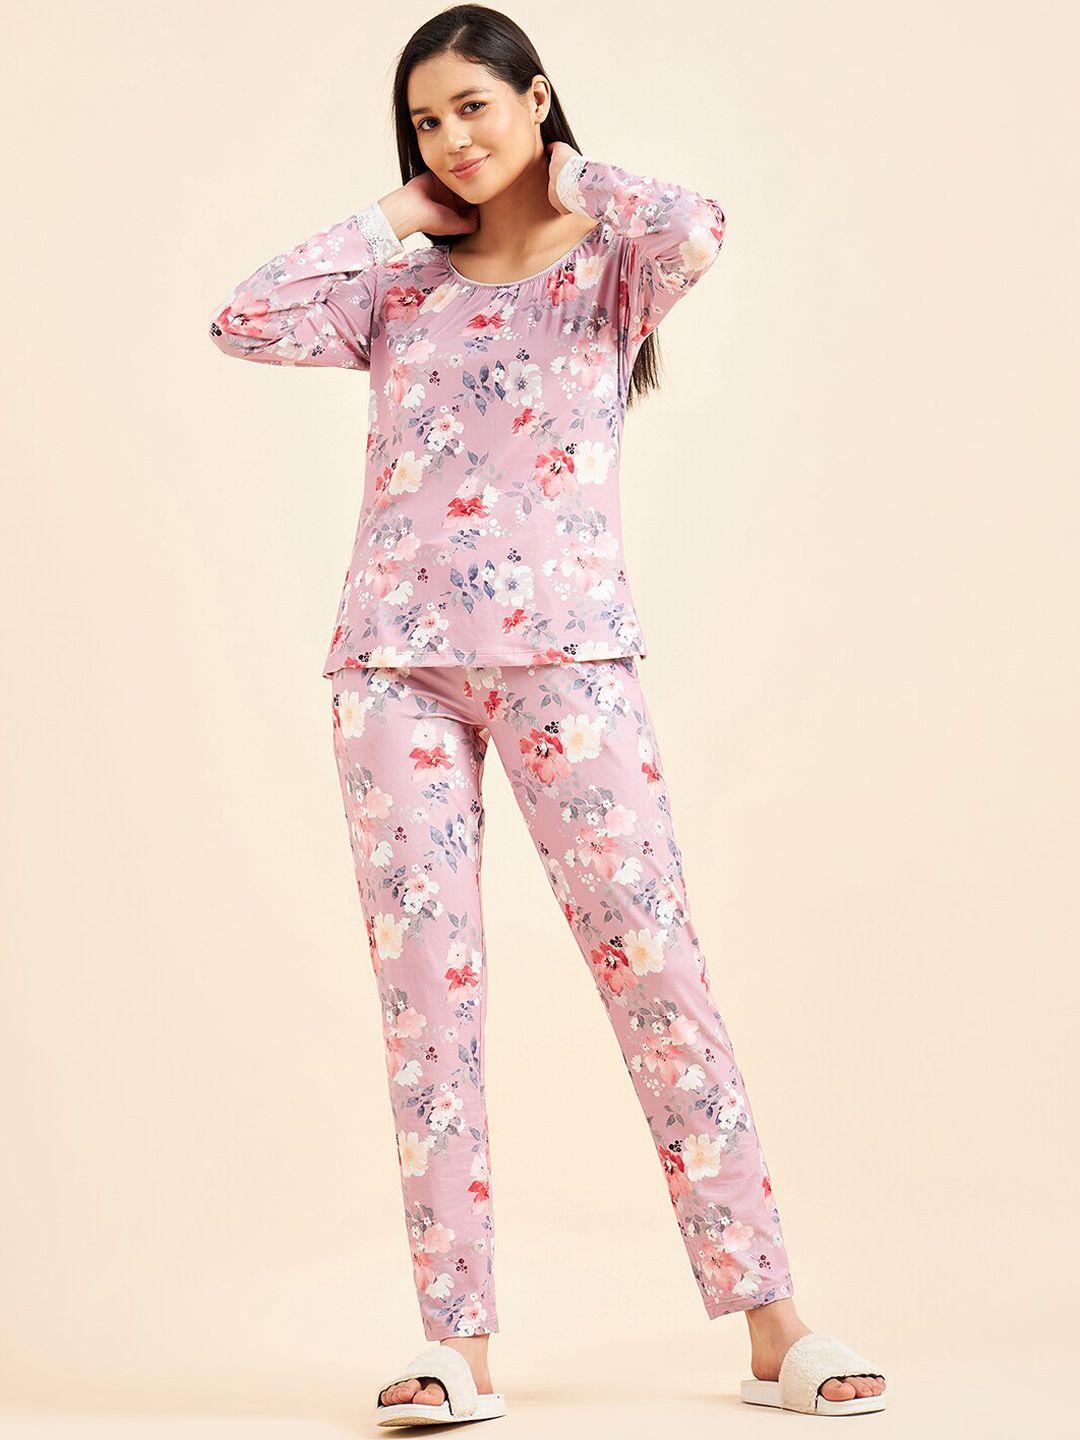 sweet dreams floral printed night suit